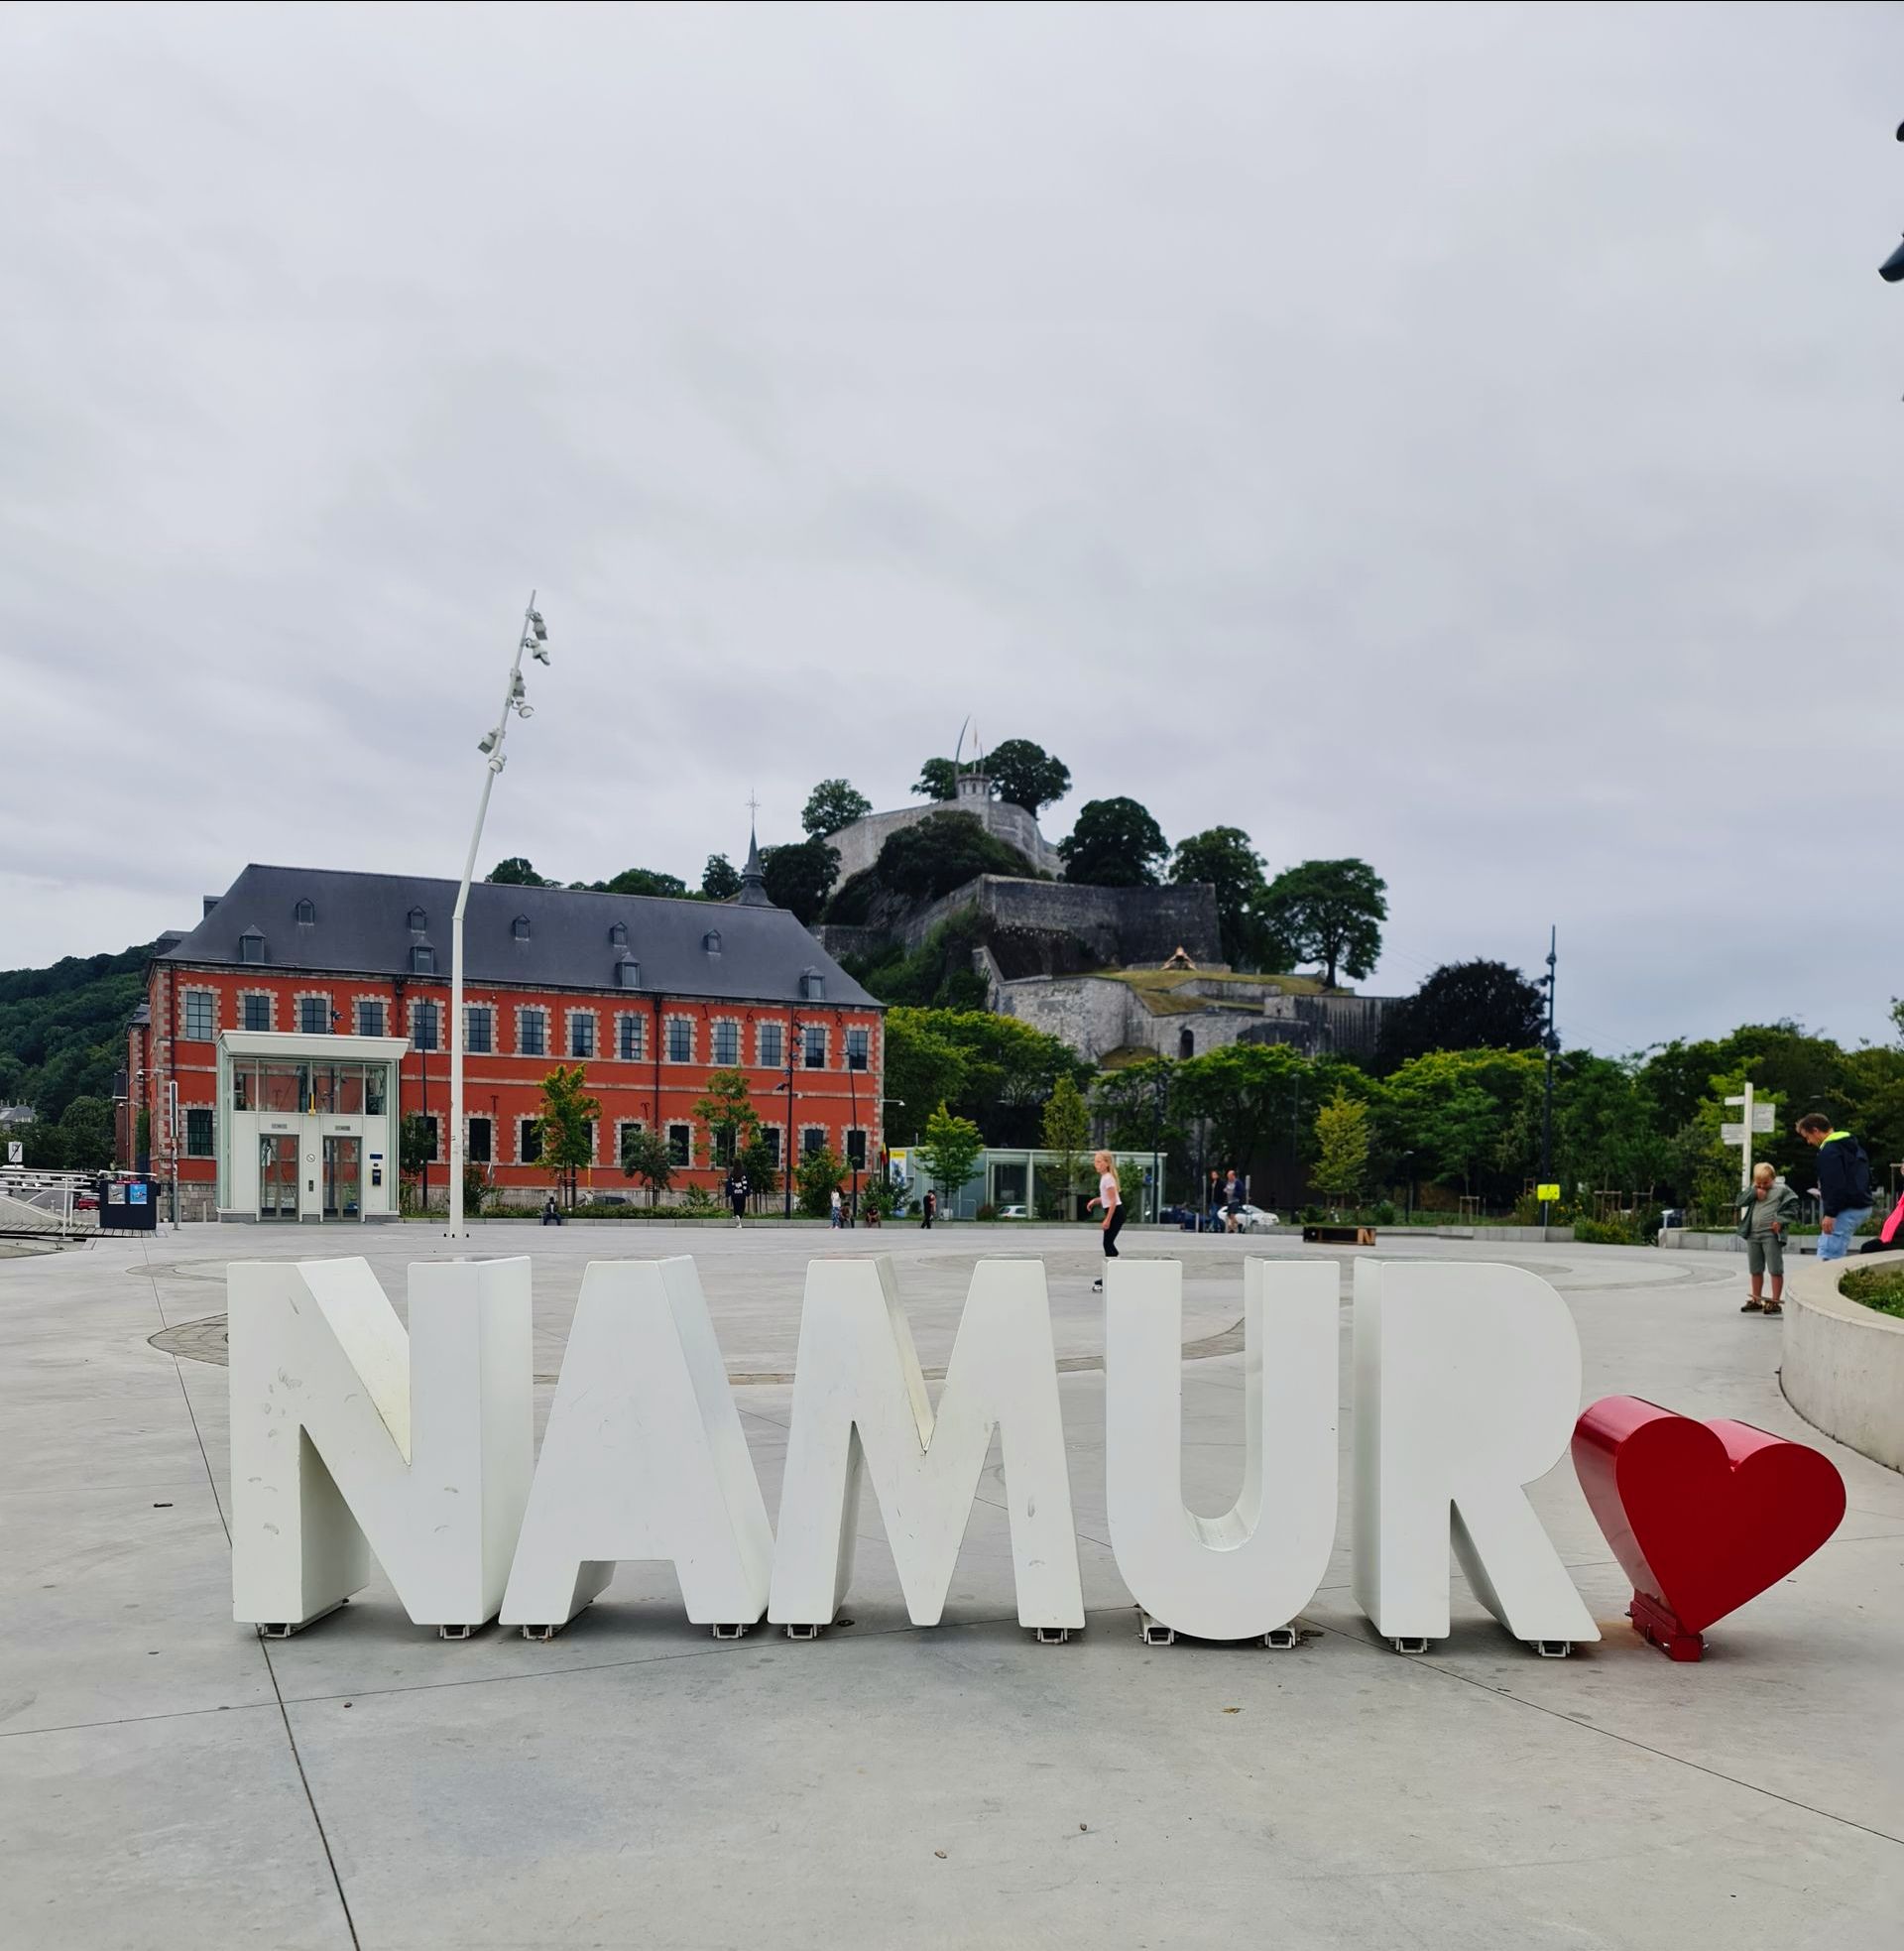 Schriftzug in großen weißen Buchstaben NAMUR am Ende ein kleineres rotes Herz